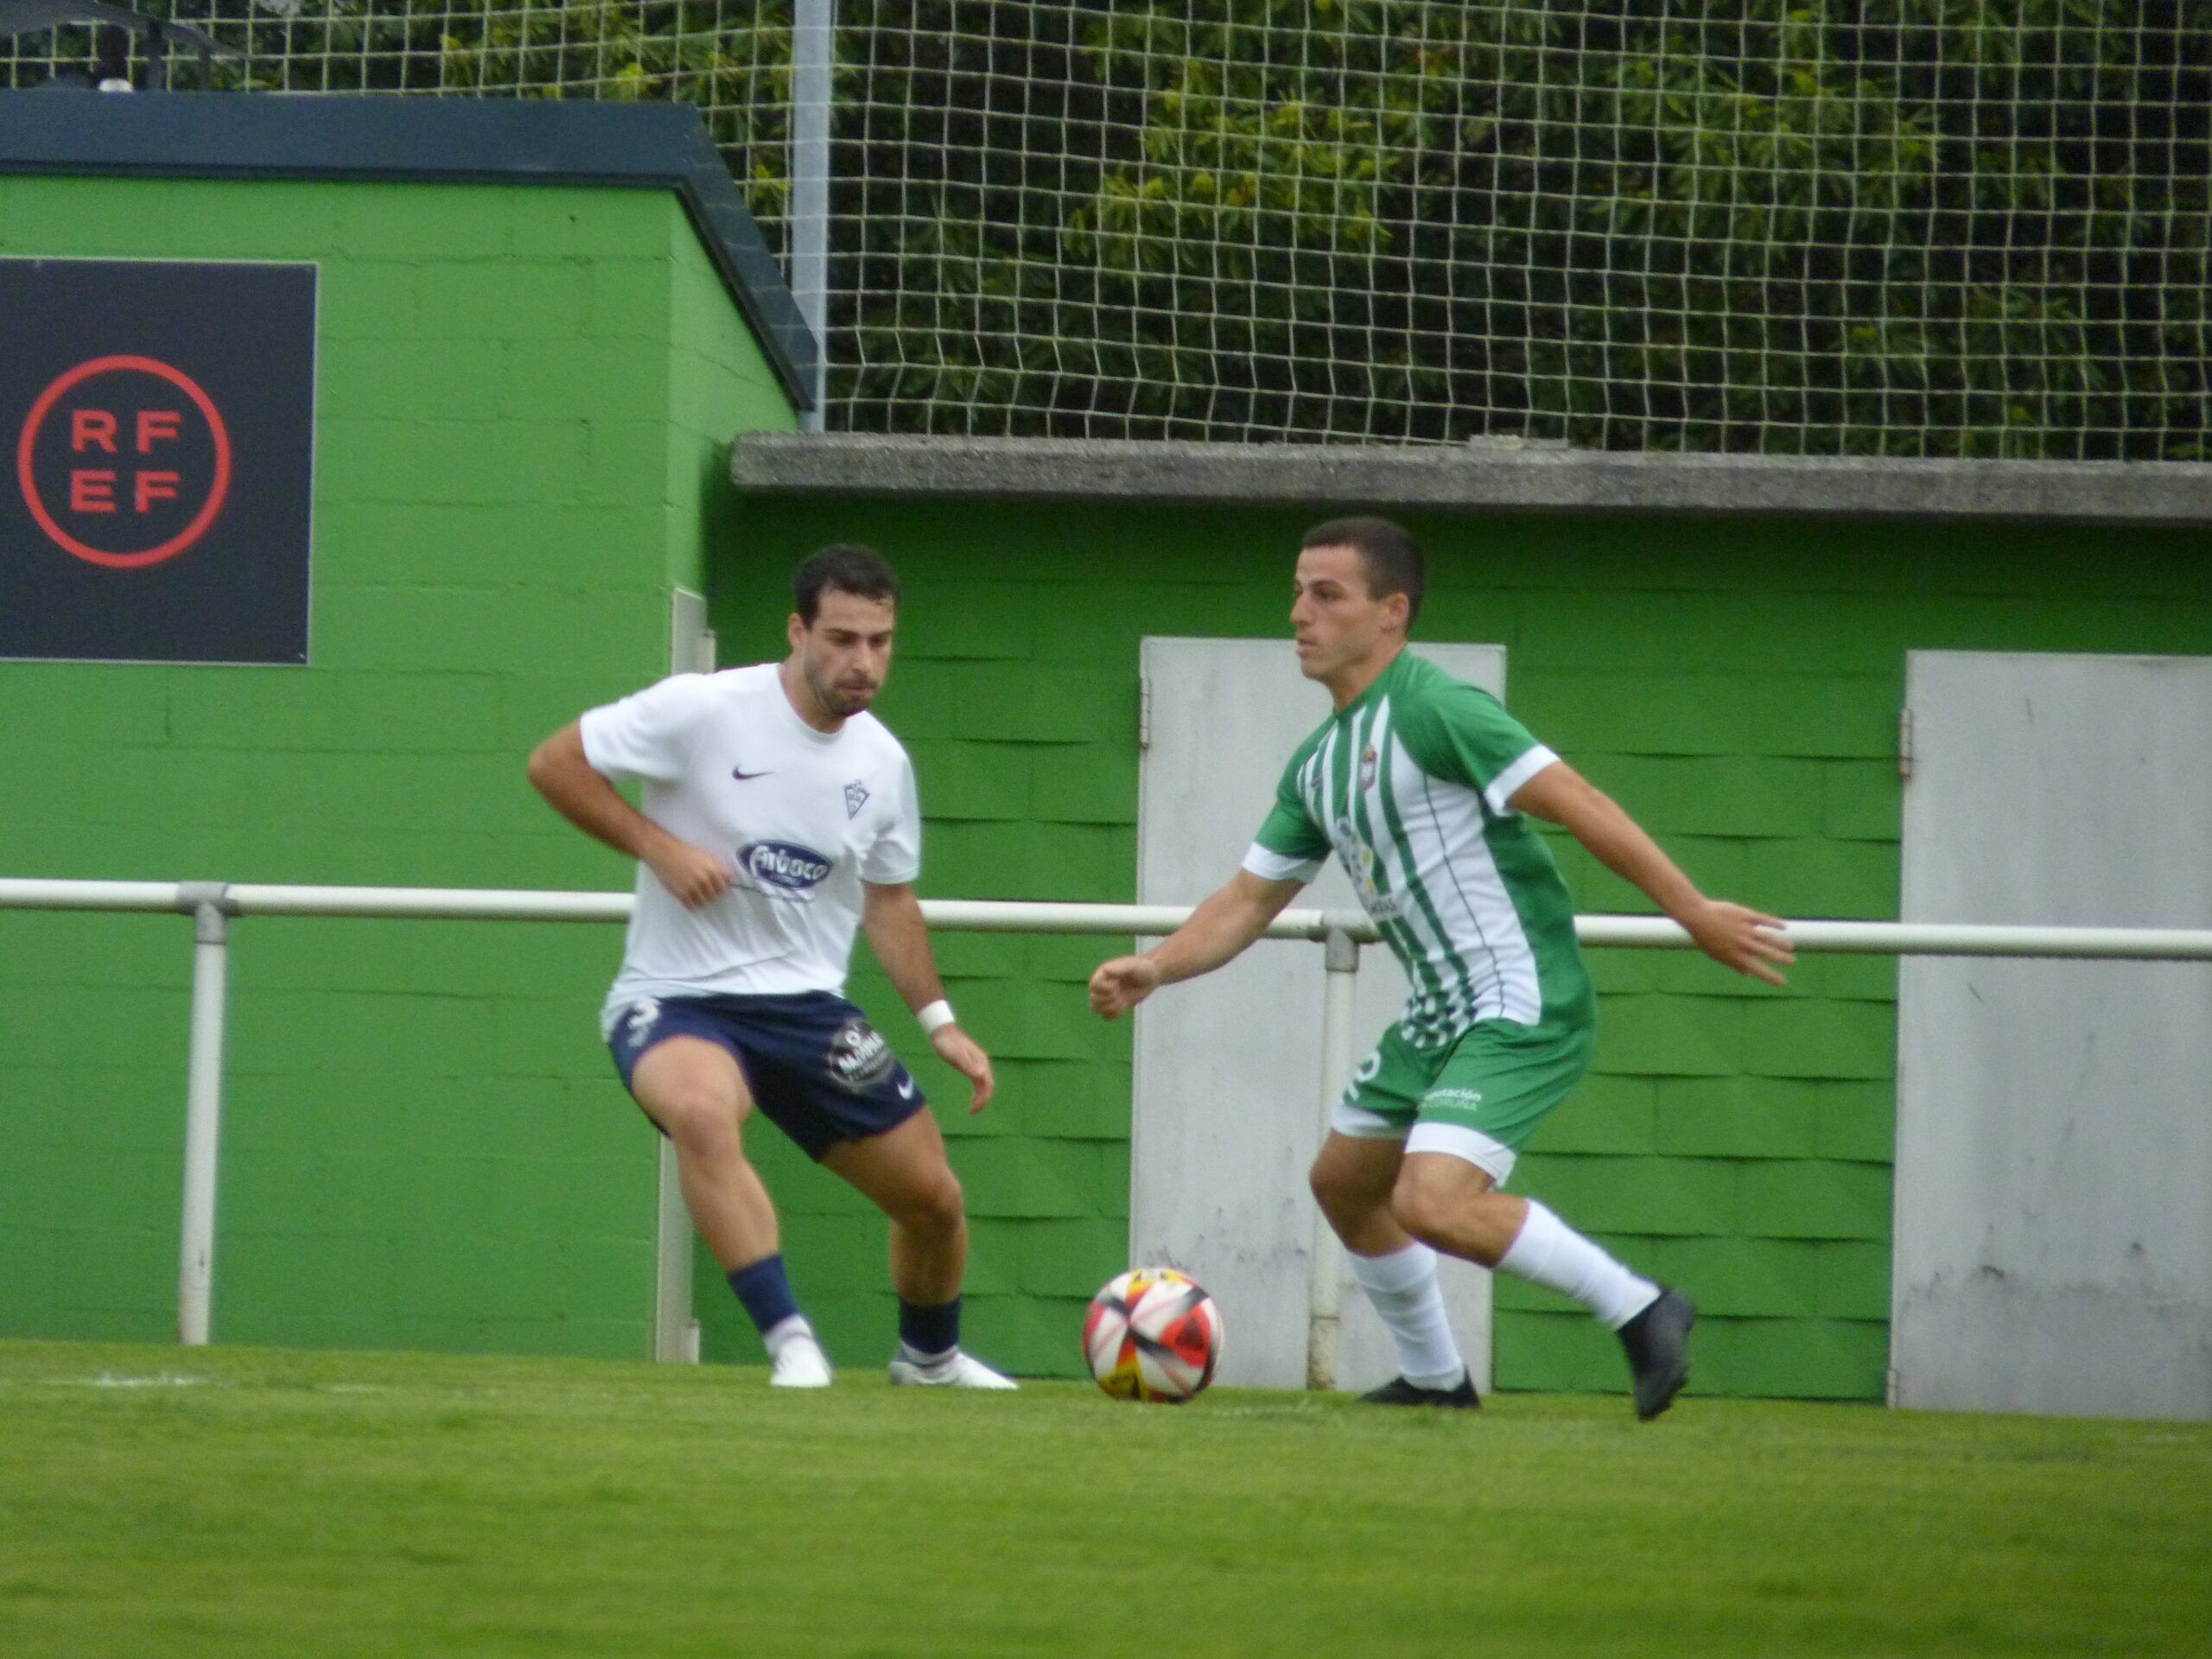 El Villalbés avanza a semis de la Copa Federación tras golear al Viveiro -  Todo el Fútbol está en Muchacalidad